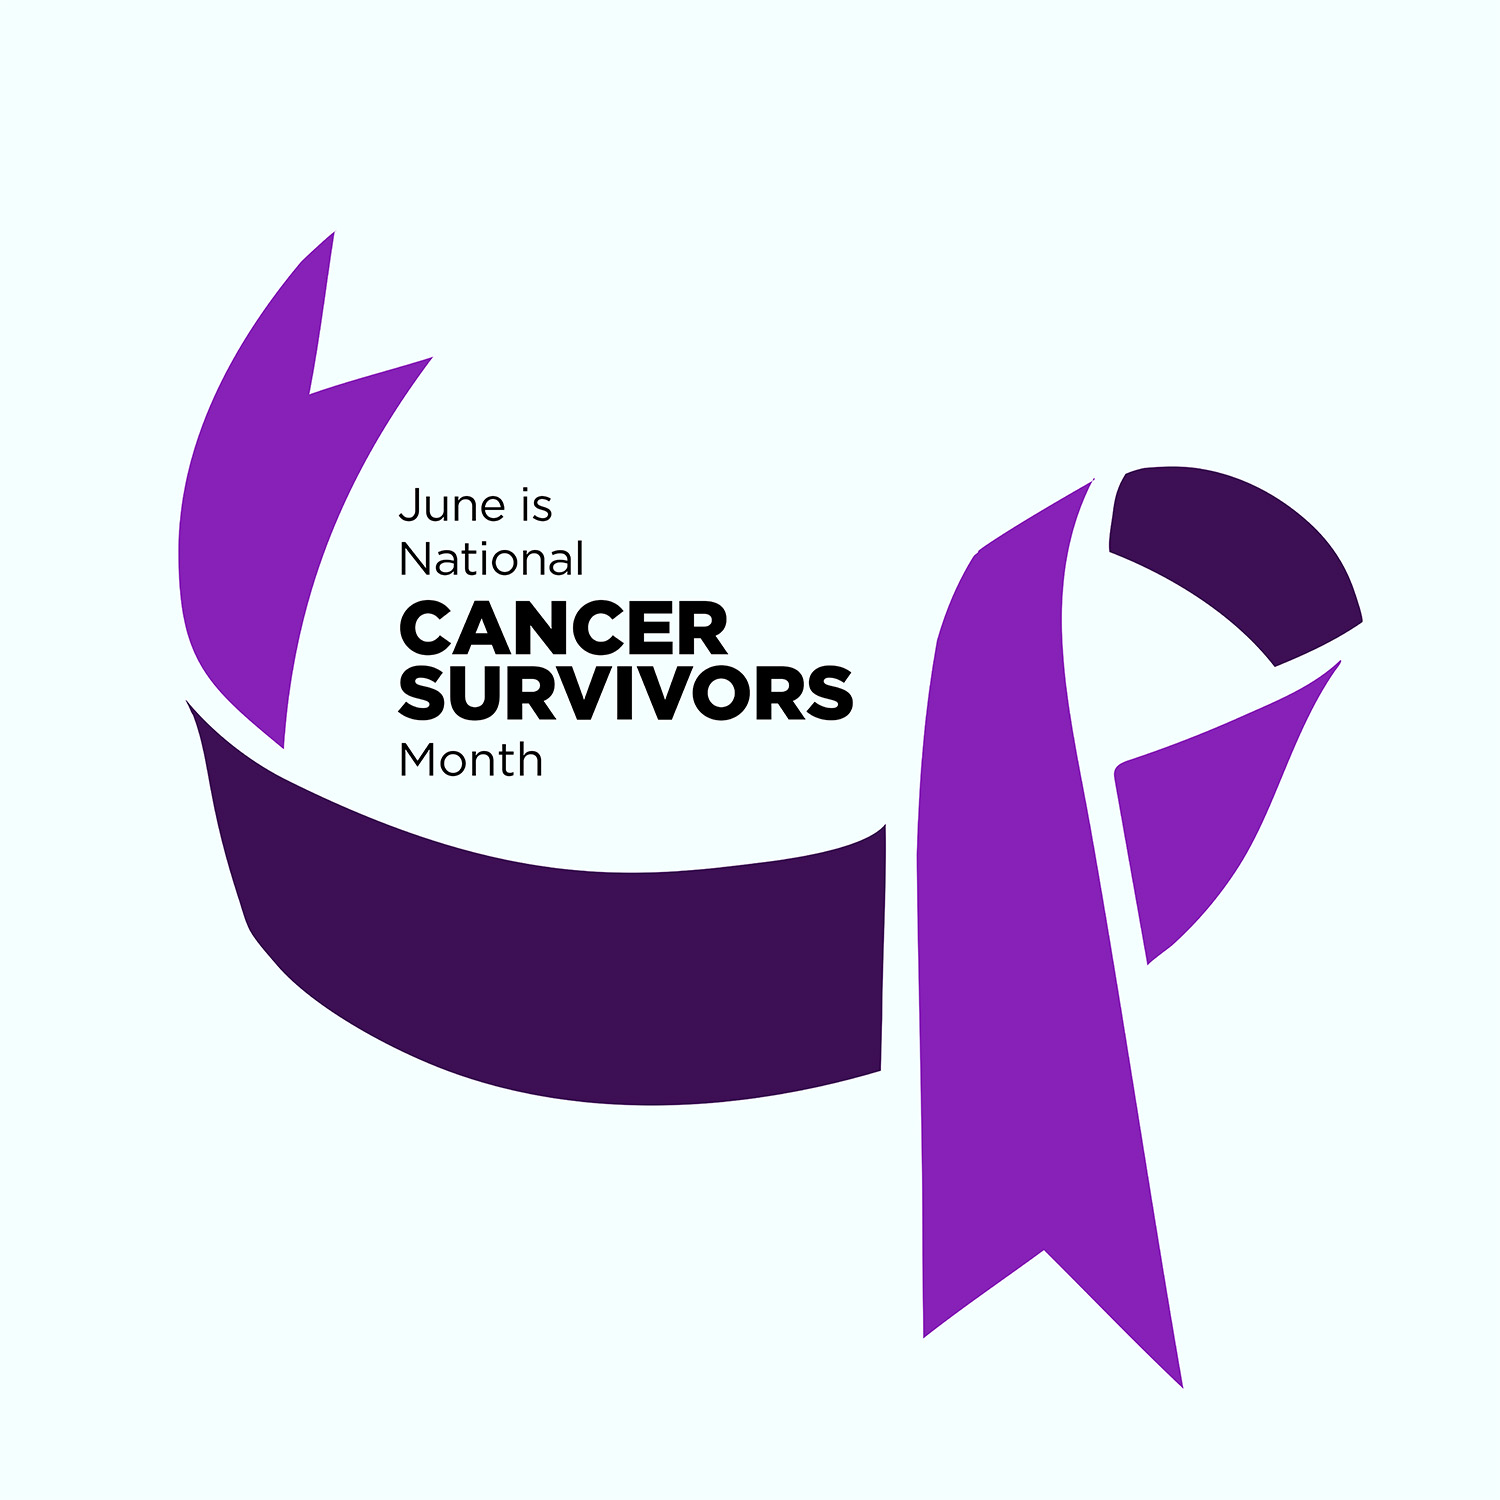 June is National Cancer Survivors Month